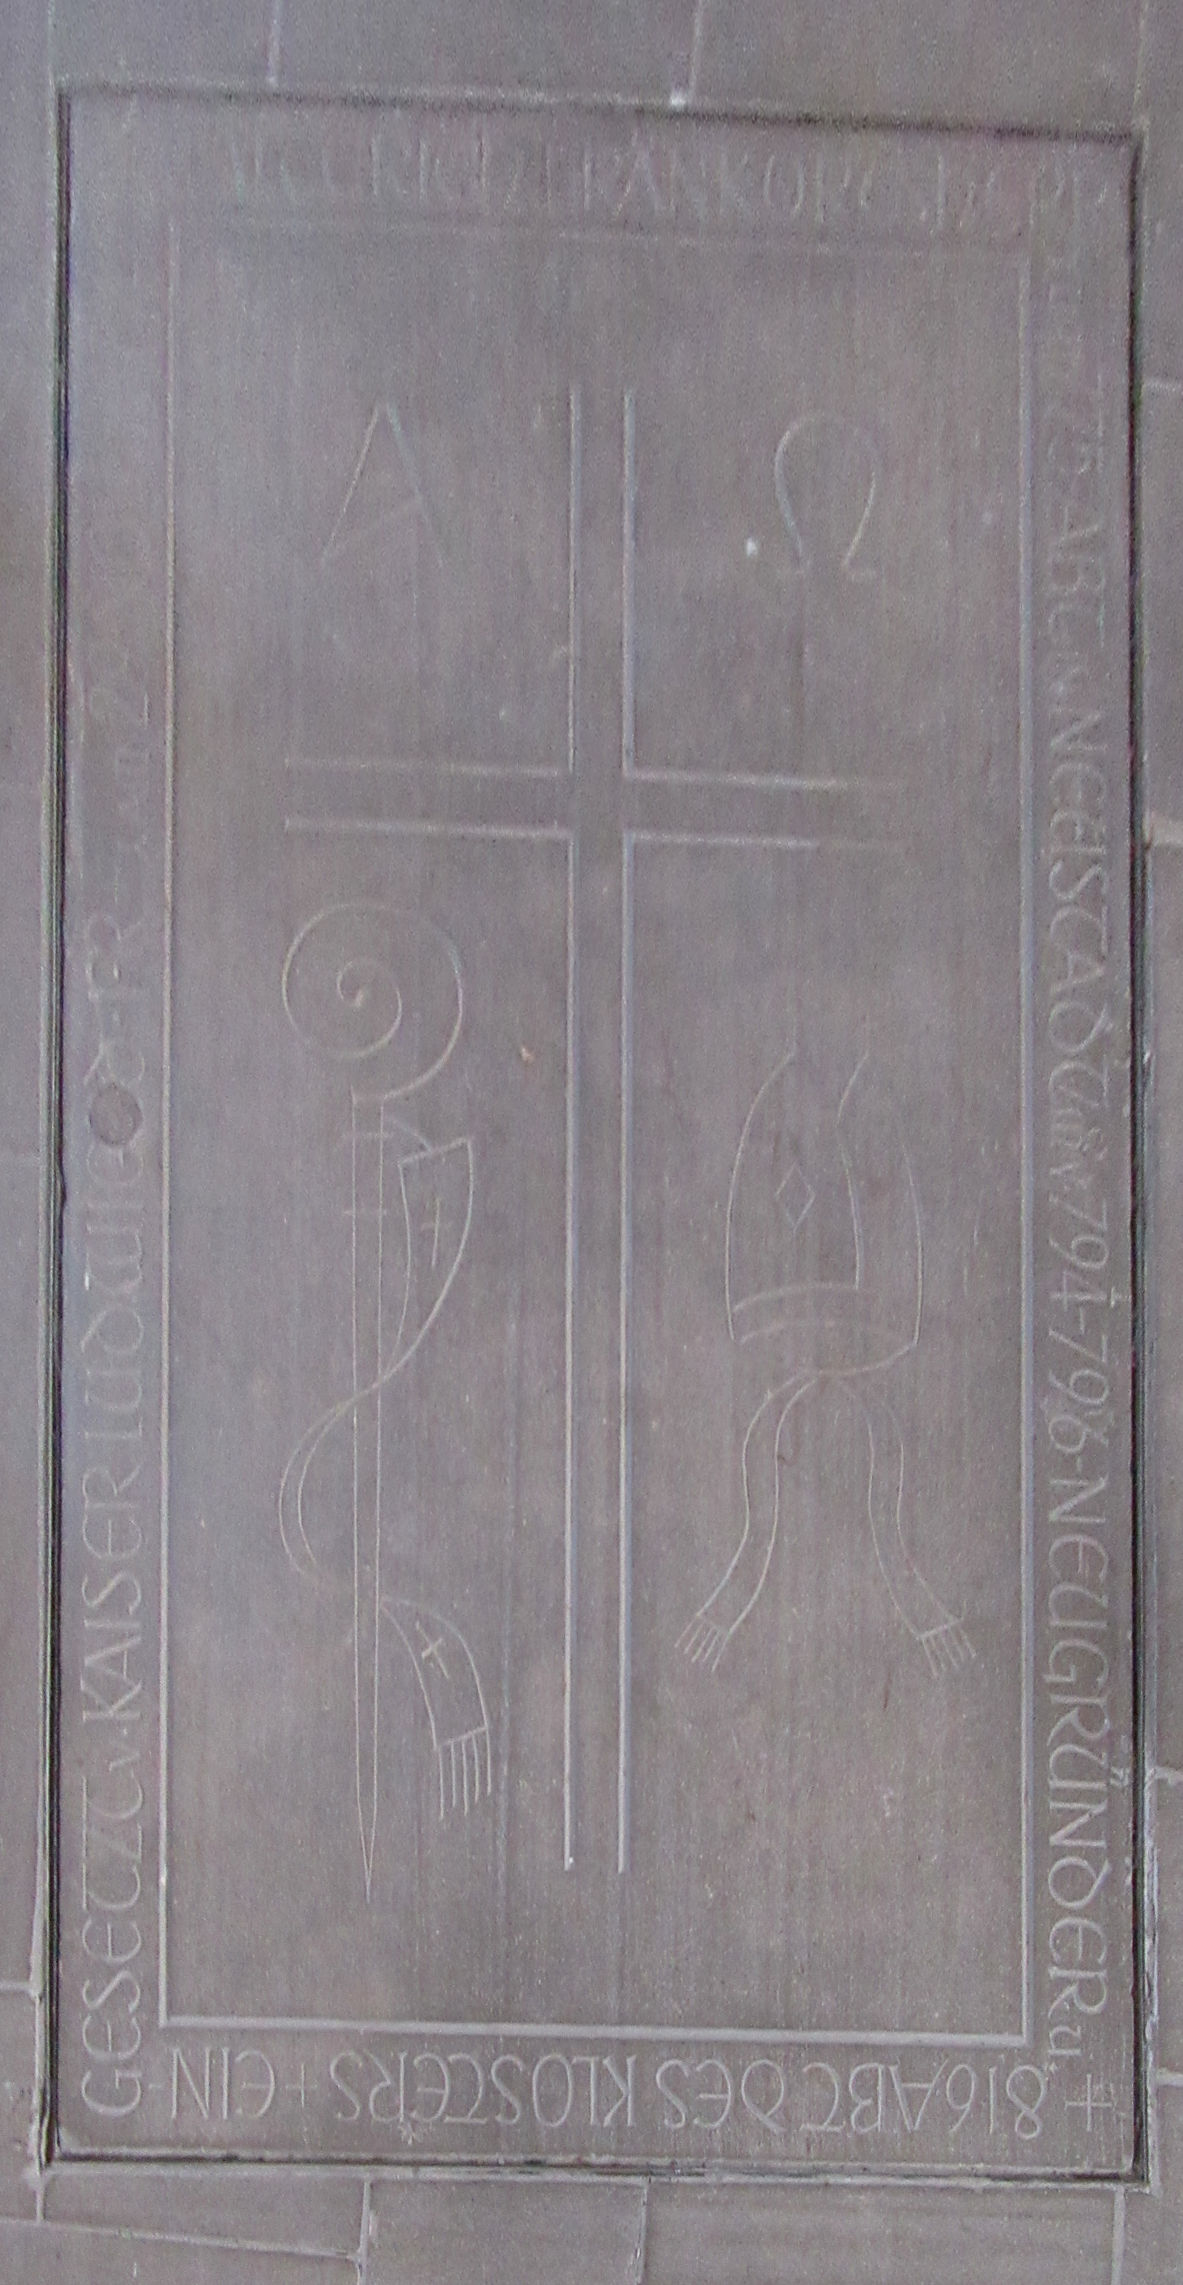 moderne Deckplatte über Walterichs Grab in der Walterichskirche